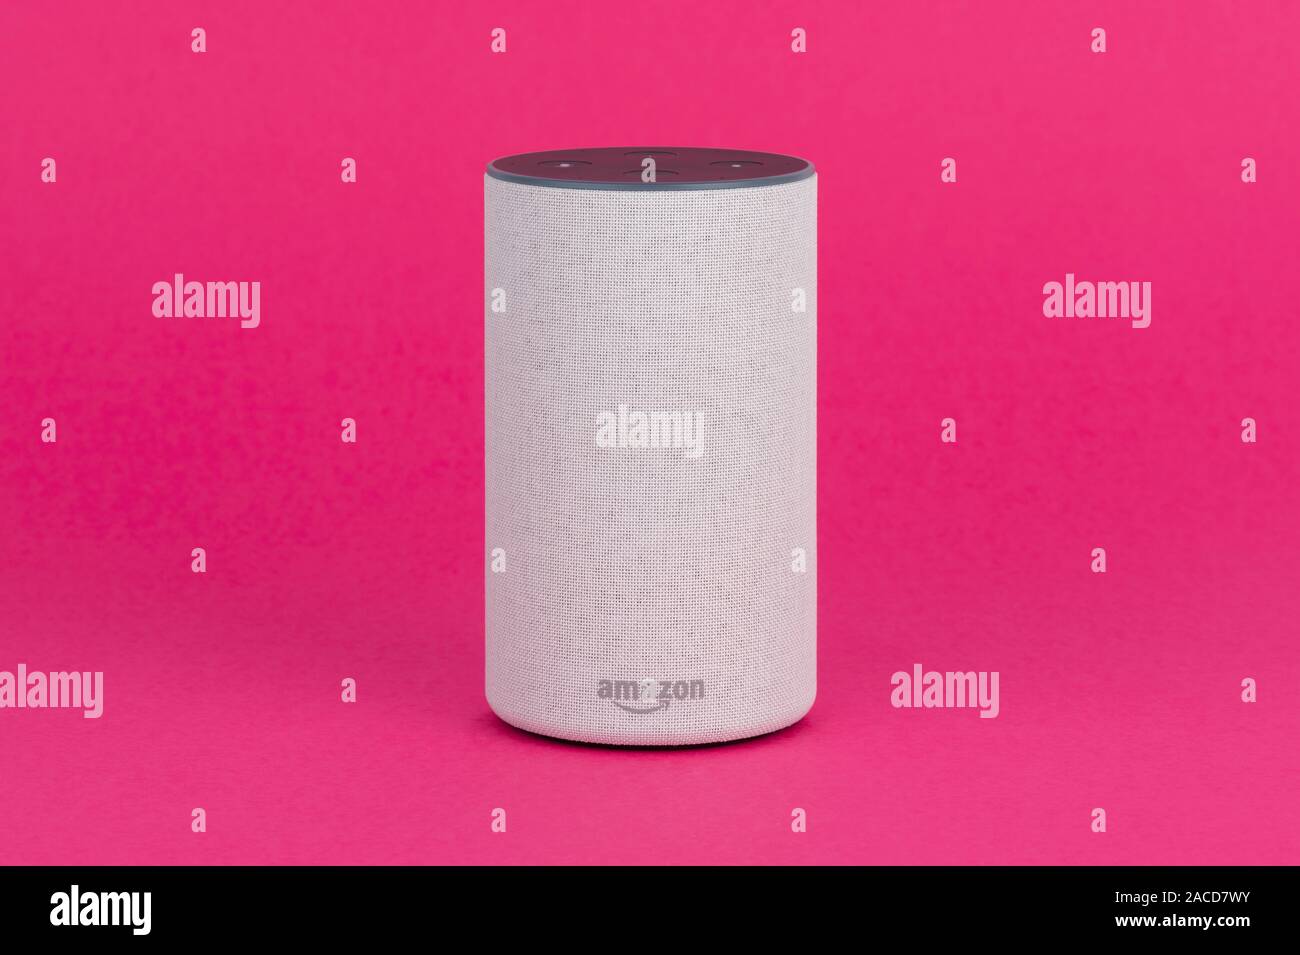 2017 Veröffentlichung einer Amazon Echo (2. Generation) smart Lautsprecher  und persönlicher Assistent Alexa gegen einen rosa Hintergrund gedreht  Stockfotografie - Alamy